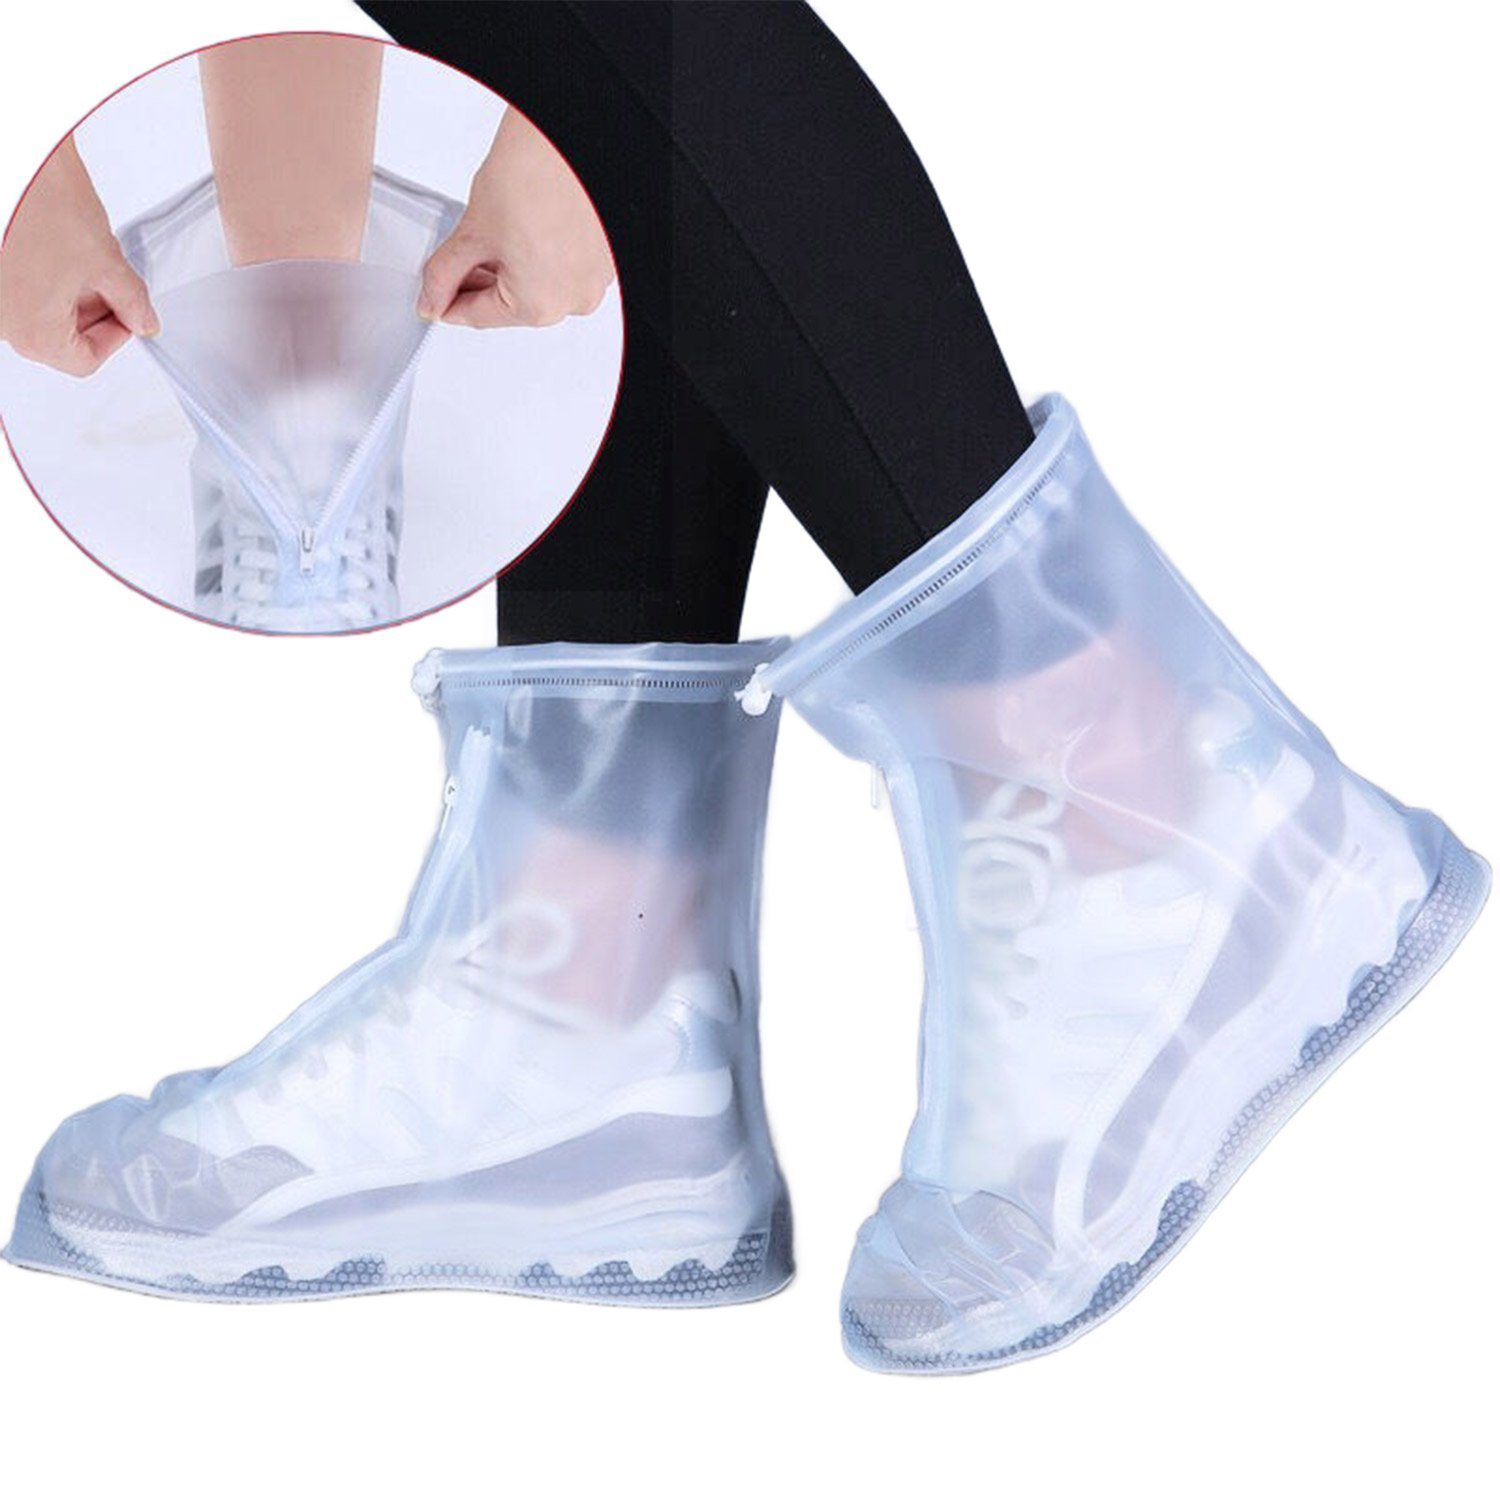 Daisred Schuhüberzieher Weiß Regenschutz Überzieher Schuhe Wasserdicht